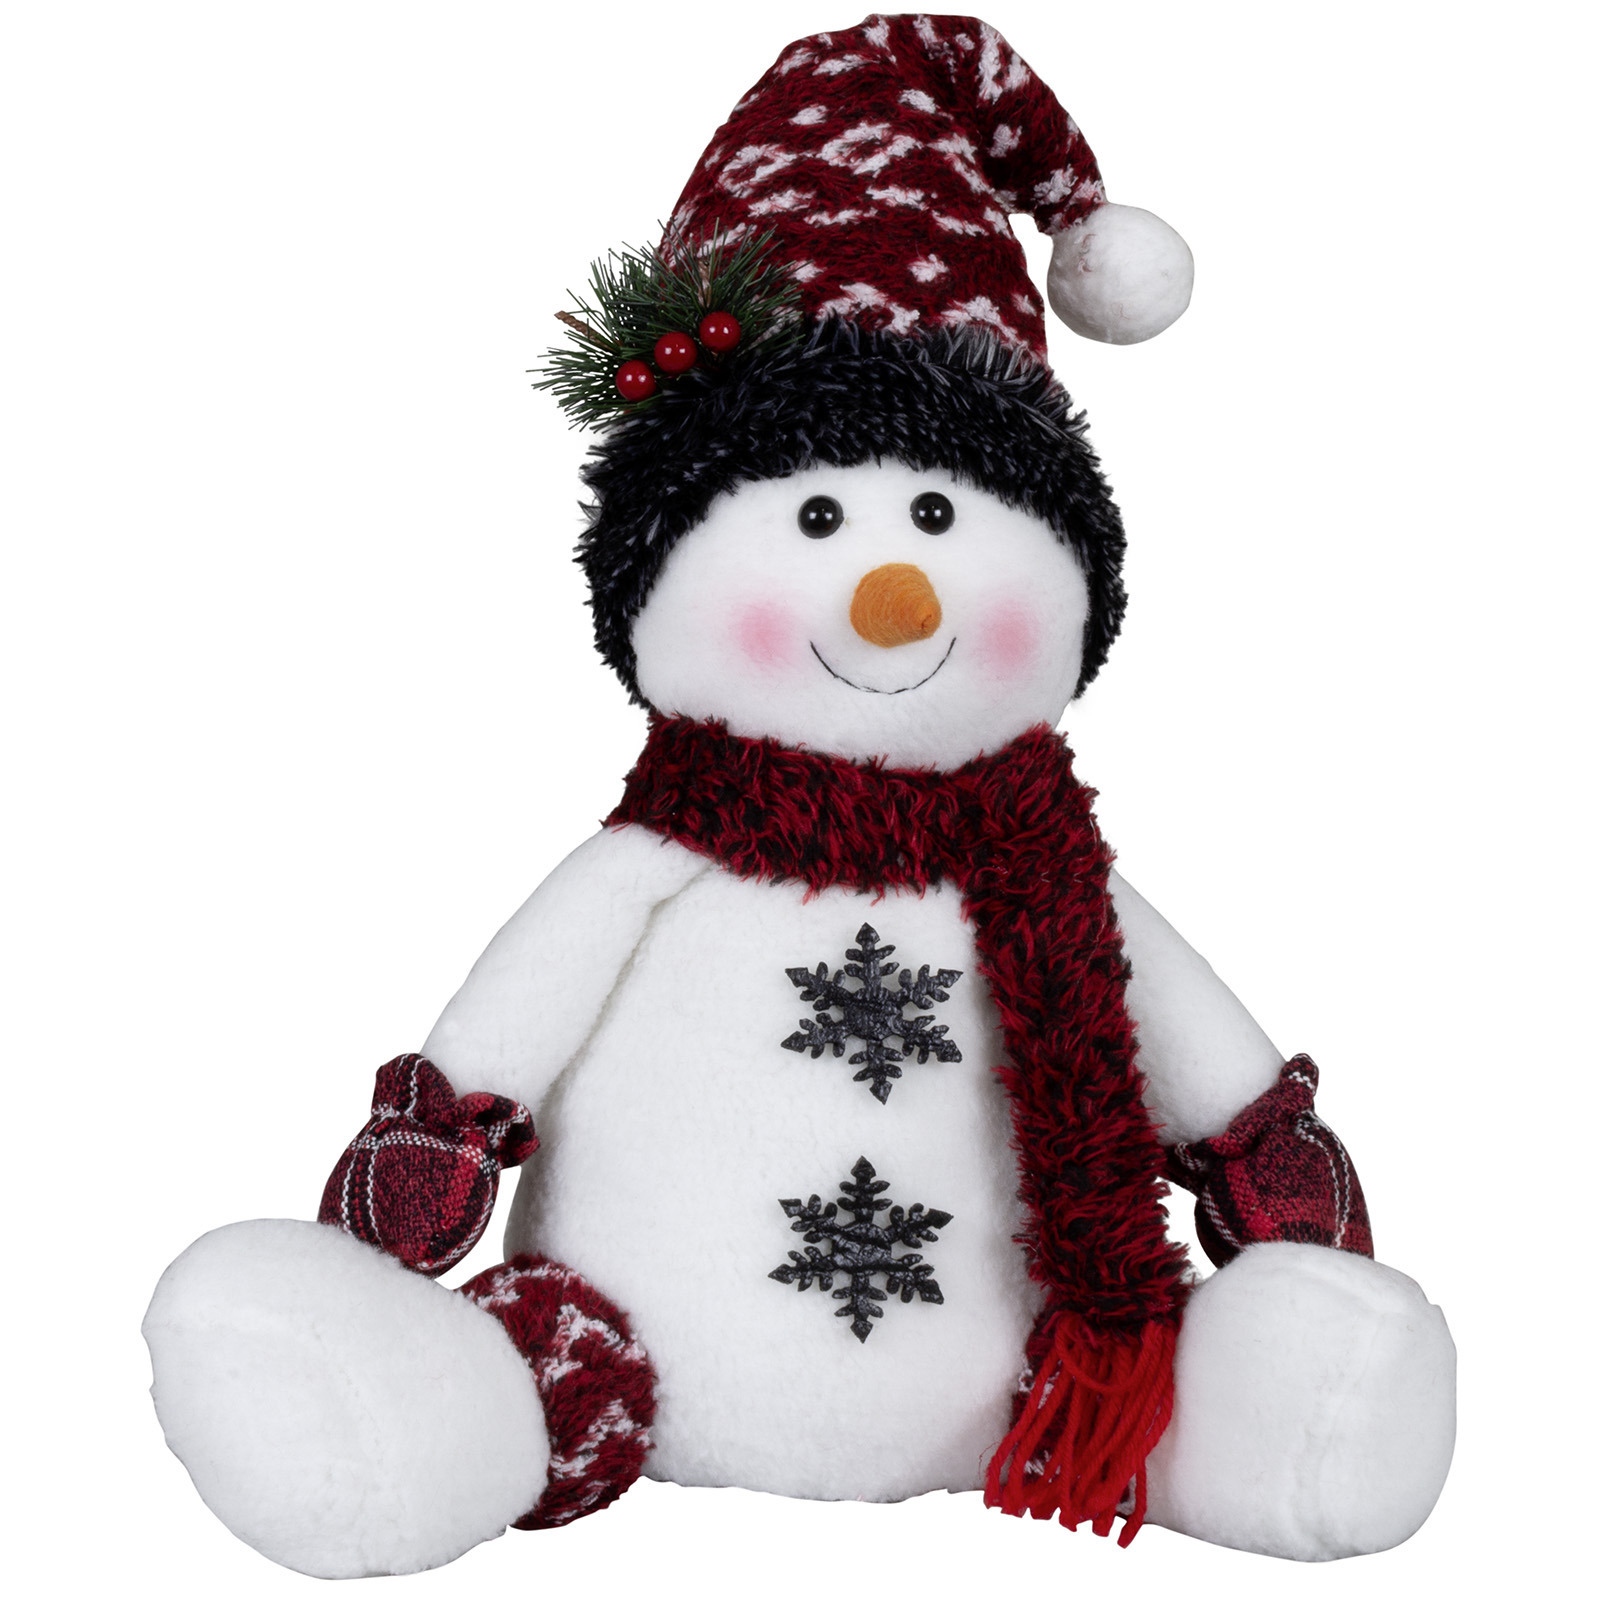 Pluche sneeuwpop knuffel - zittend - 36 cm - rode muts